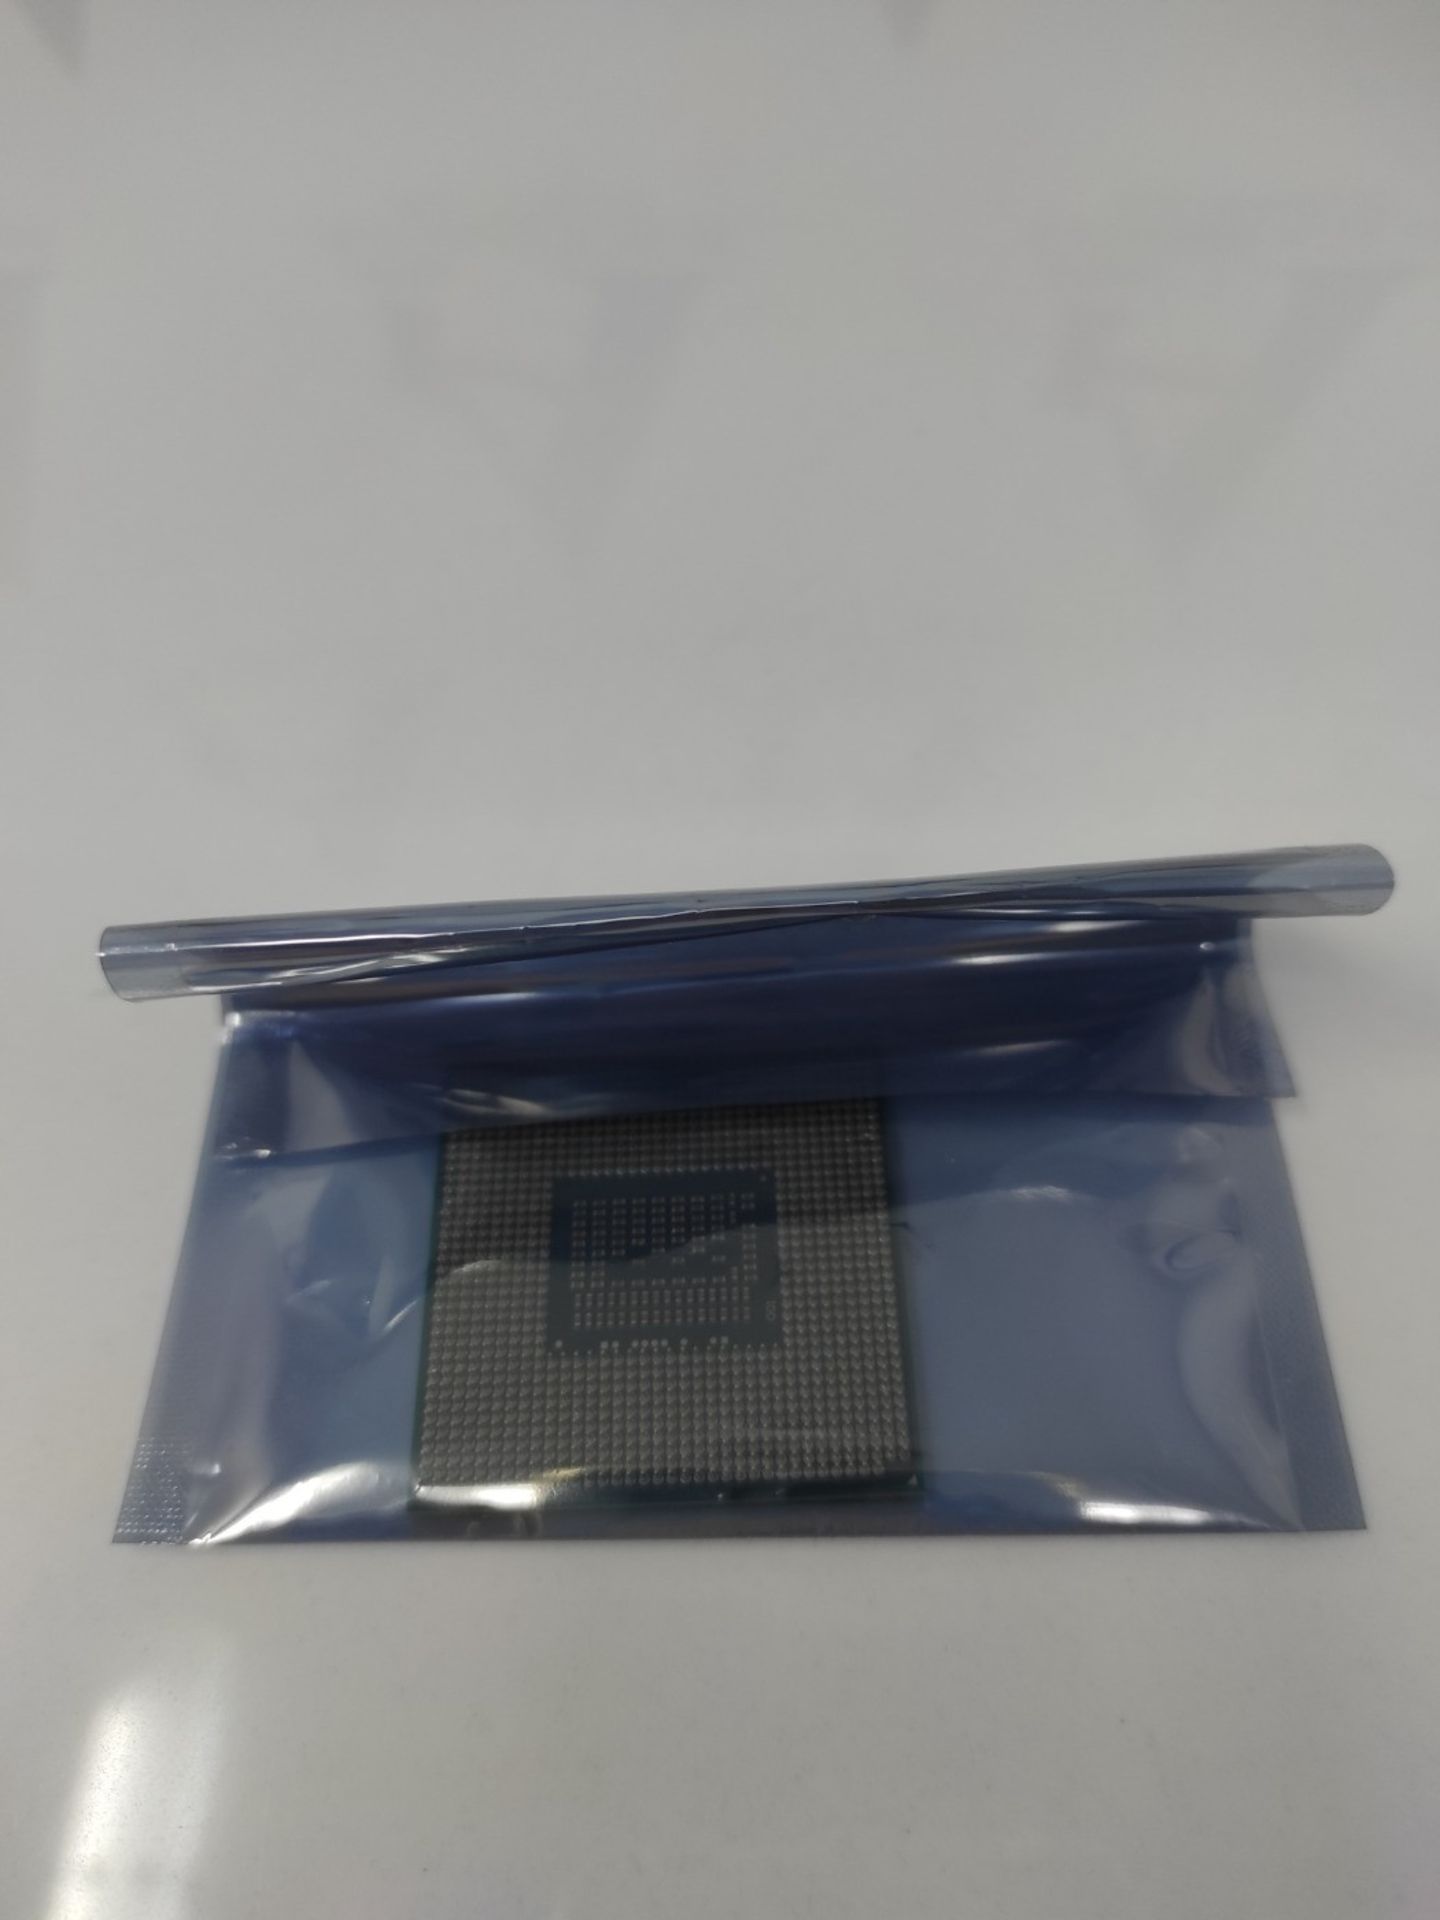 RRP £307.00 Intel 3740QM Core i7 Processor (2.70GHz, 6M Cache, 4 Core) - Image 2 of 3